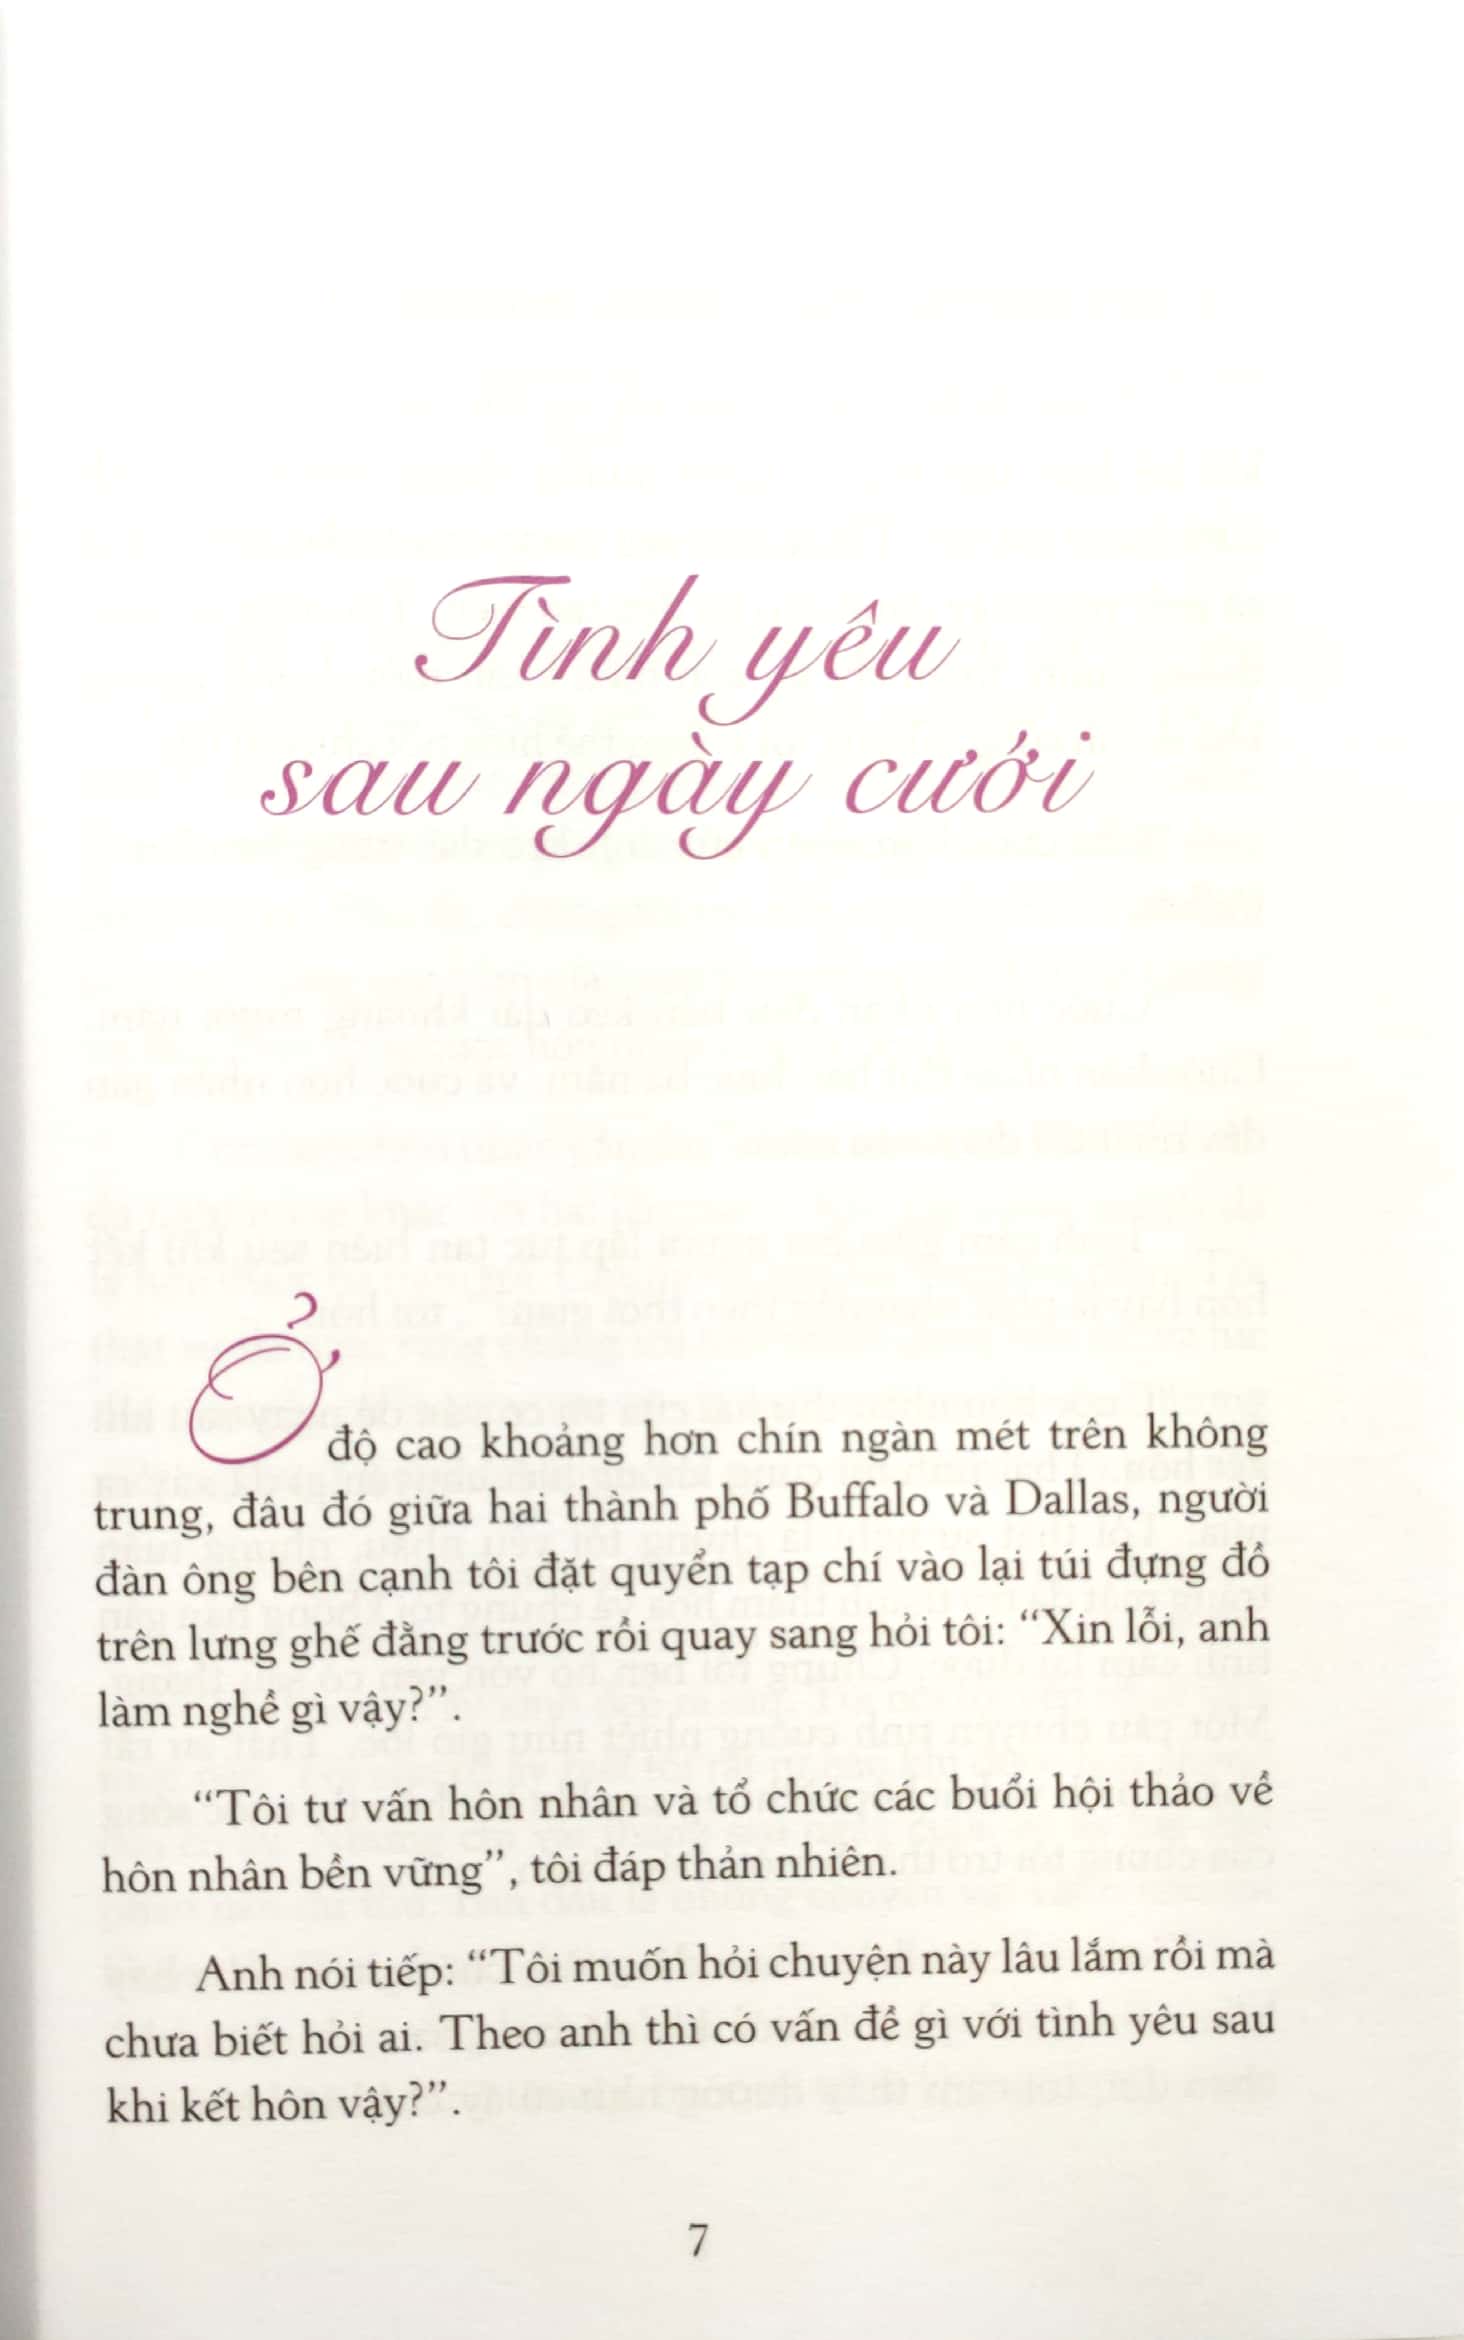 Sách 5 Ngôn Ngữ Yêu Thương - The Five Love Languages (Tái Bản 2021)